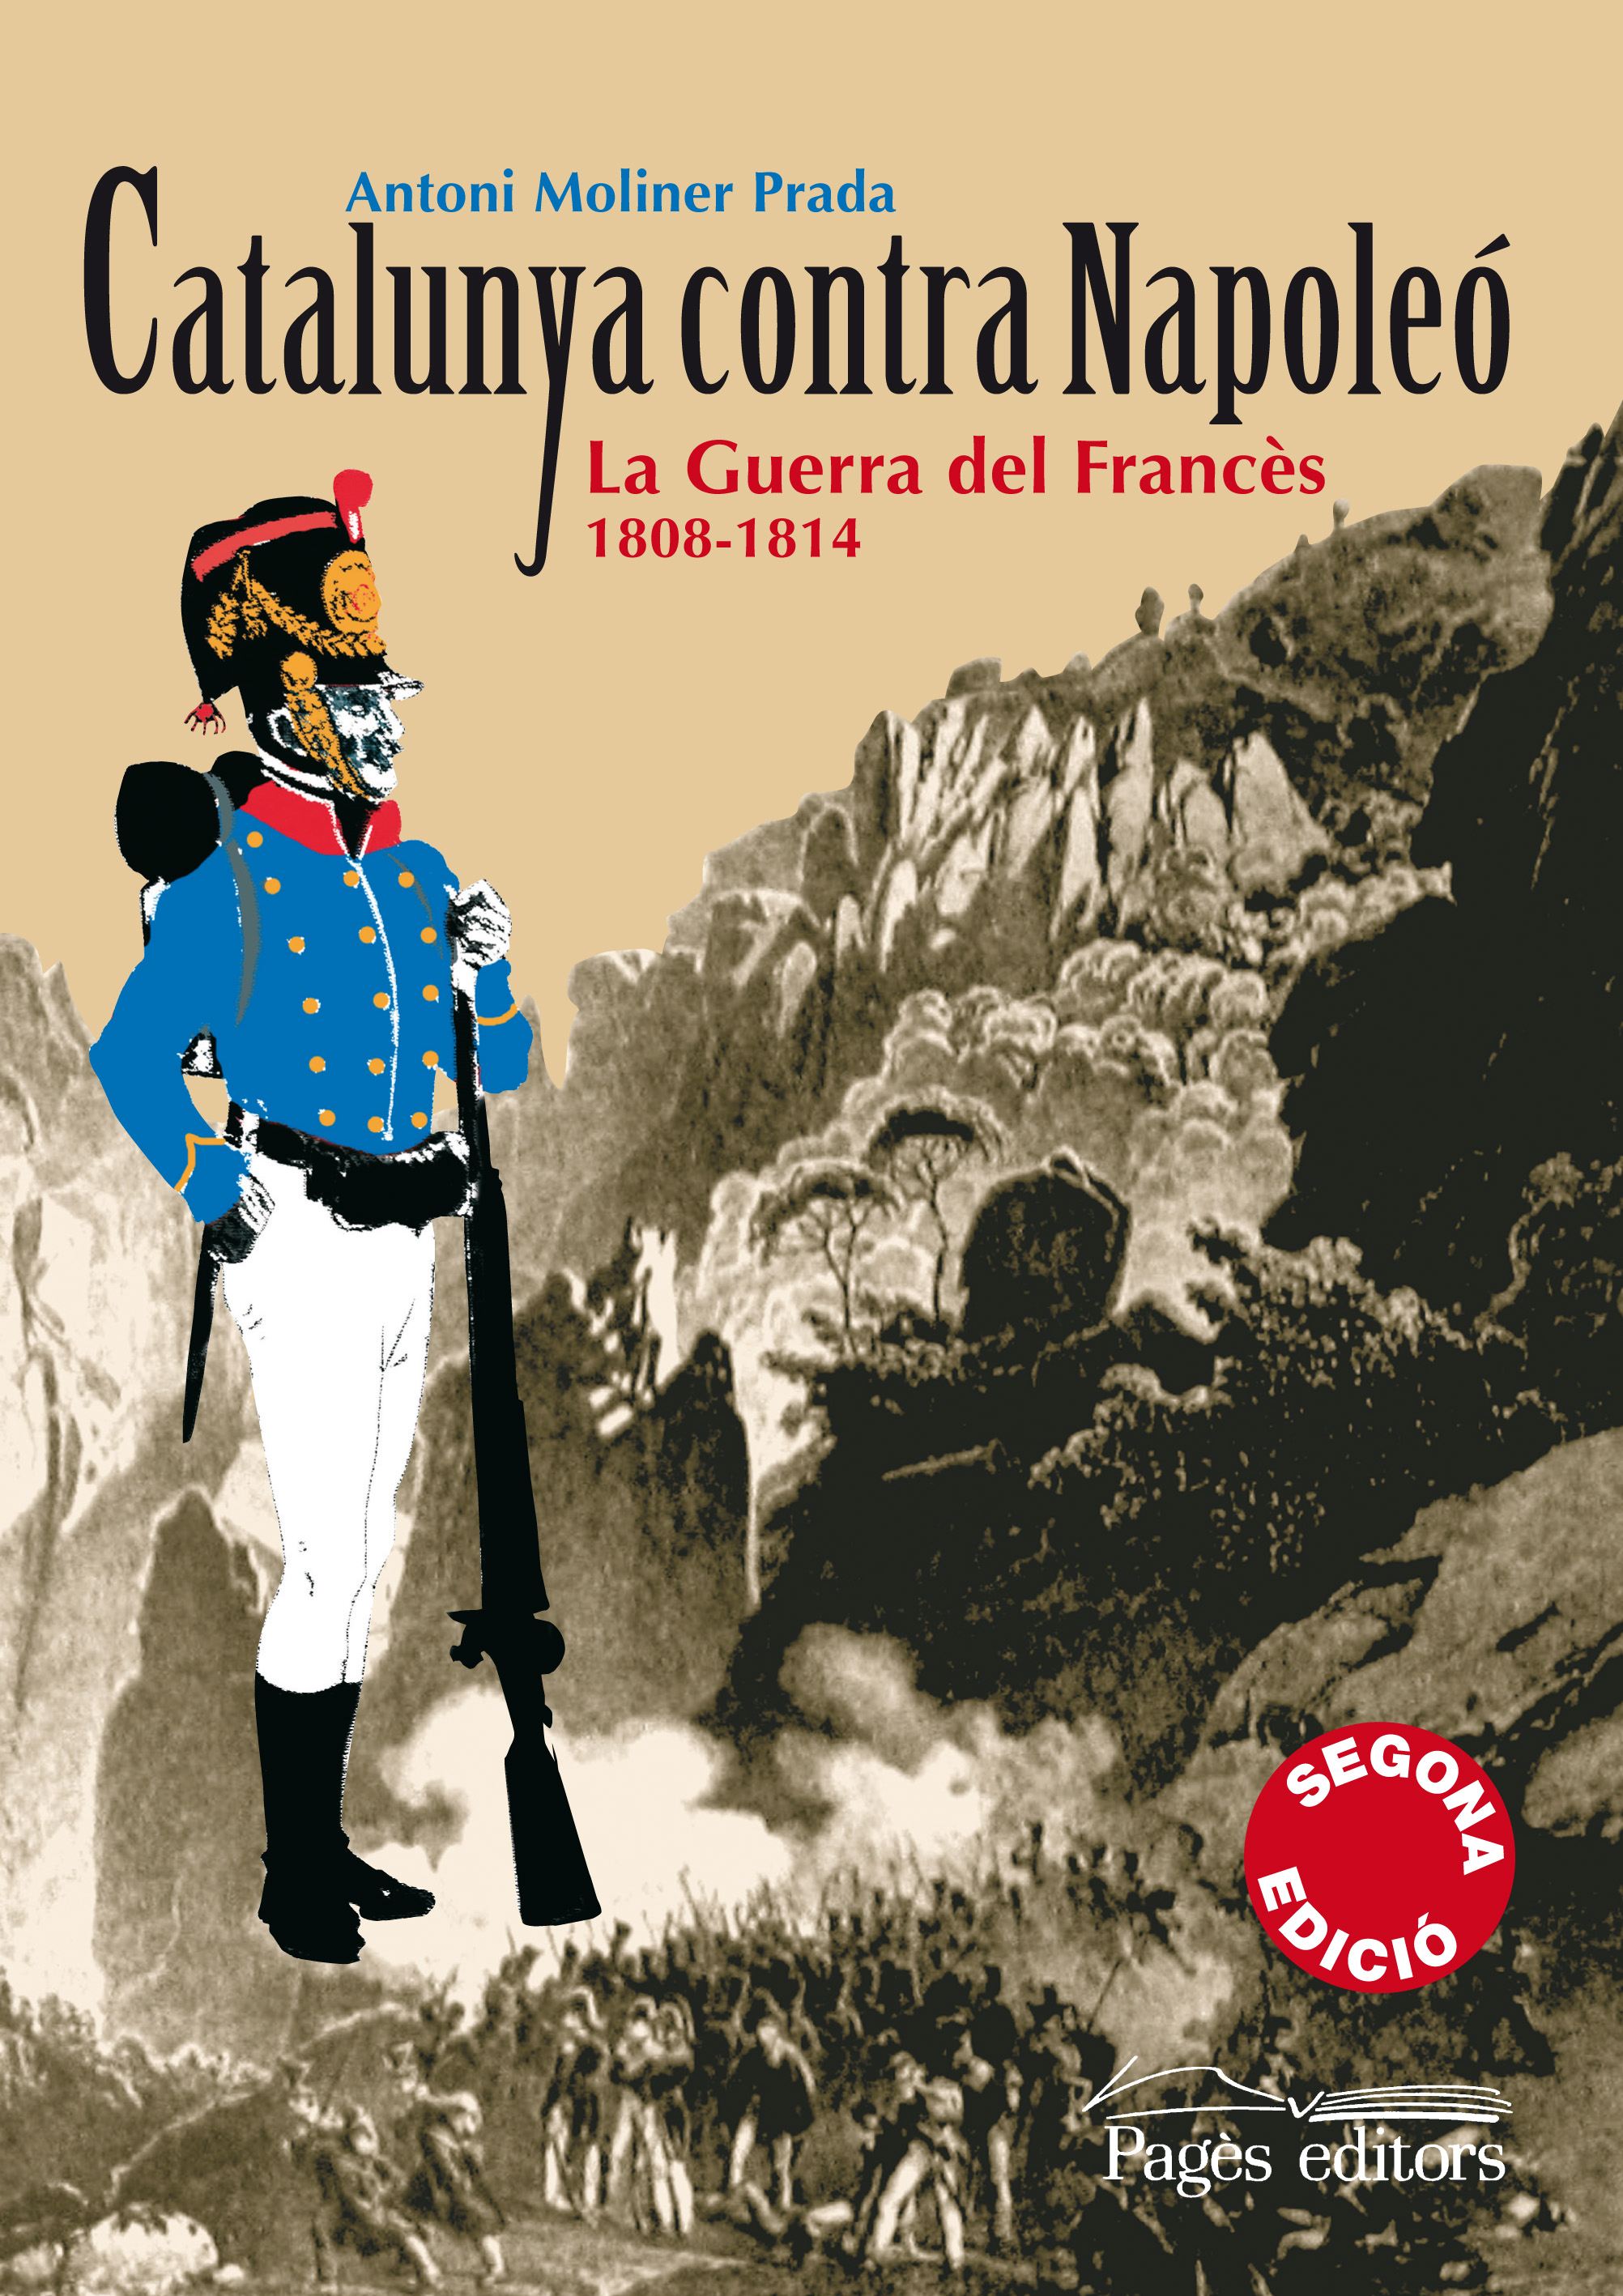 Catalunya contra Napoleón